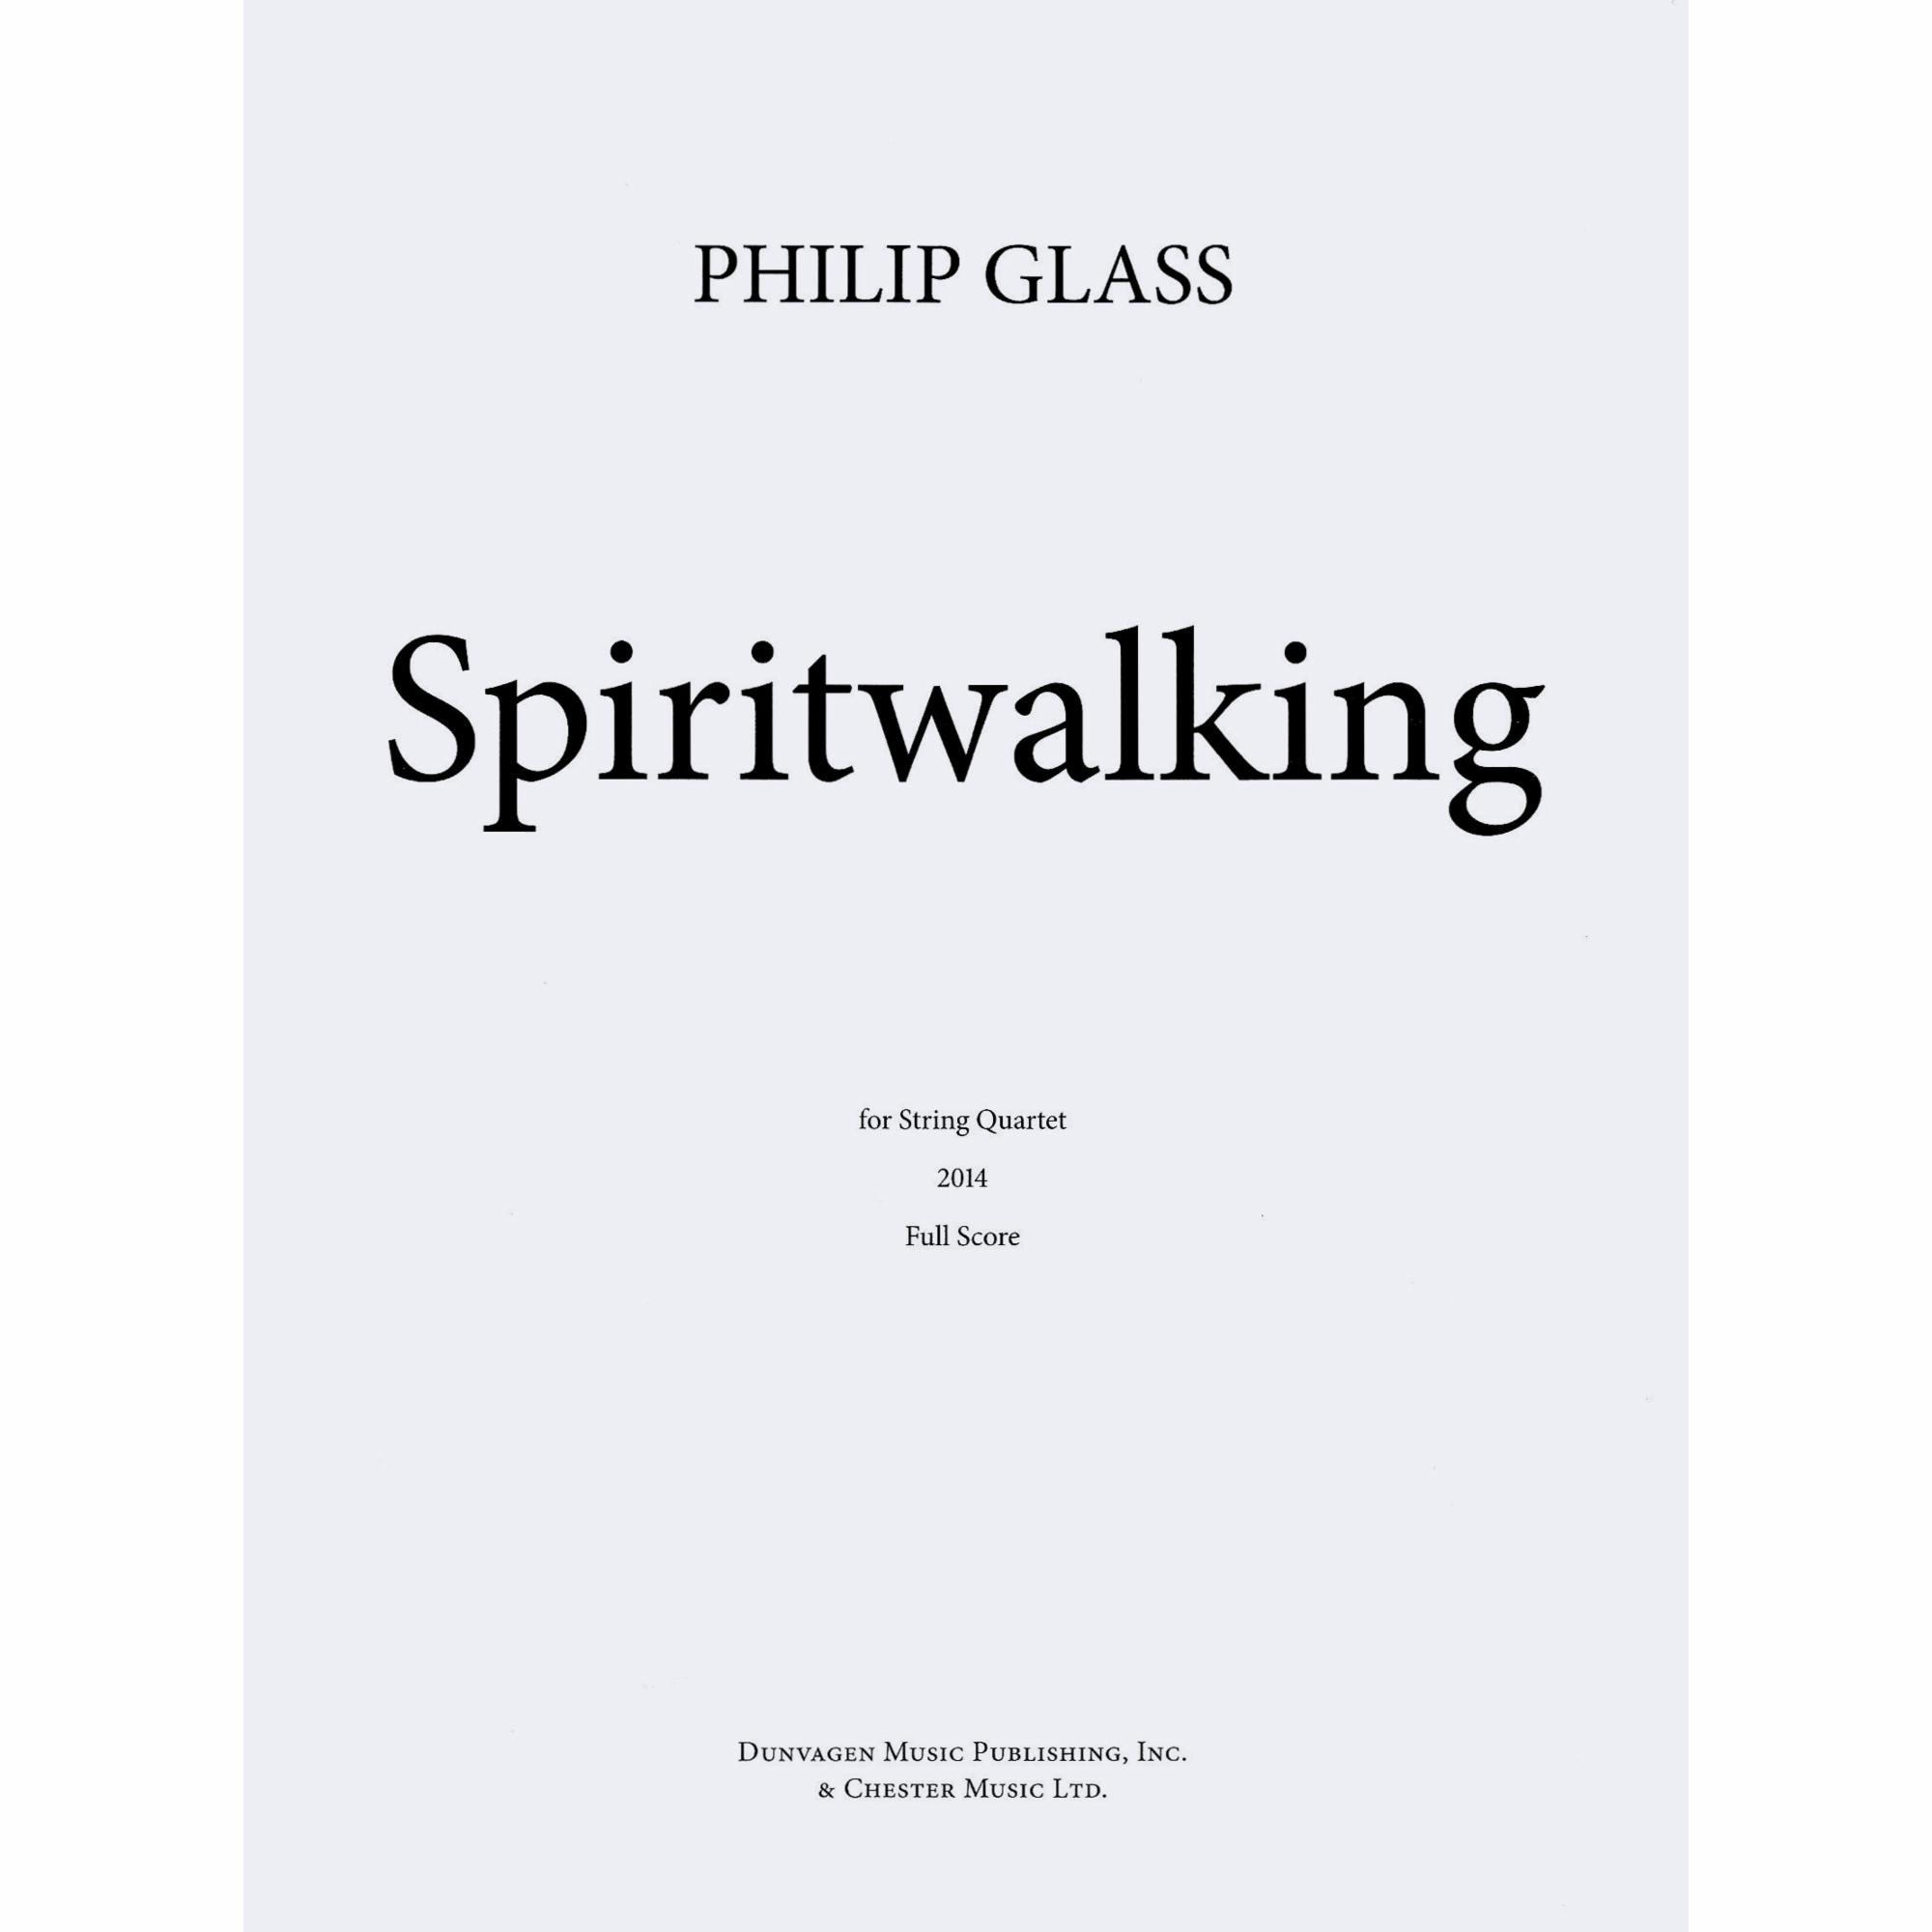 Glass -- Spiritwalking for String Quartet